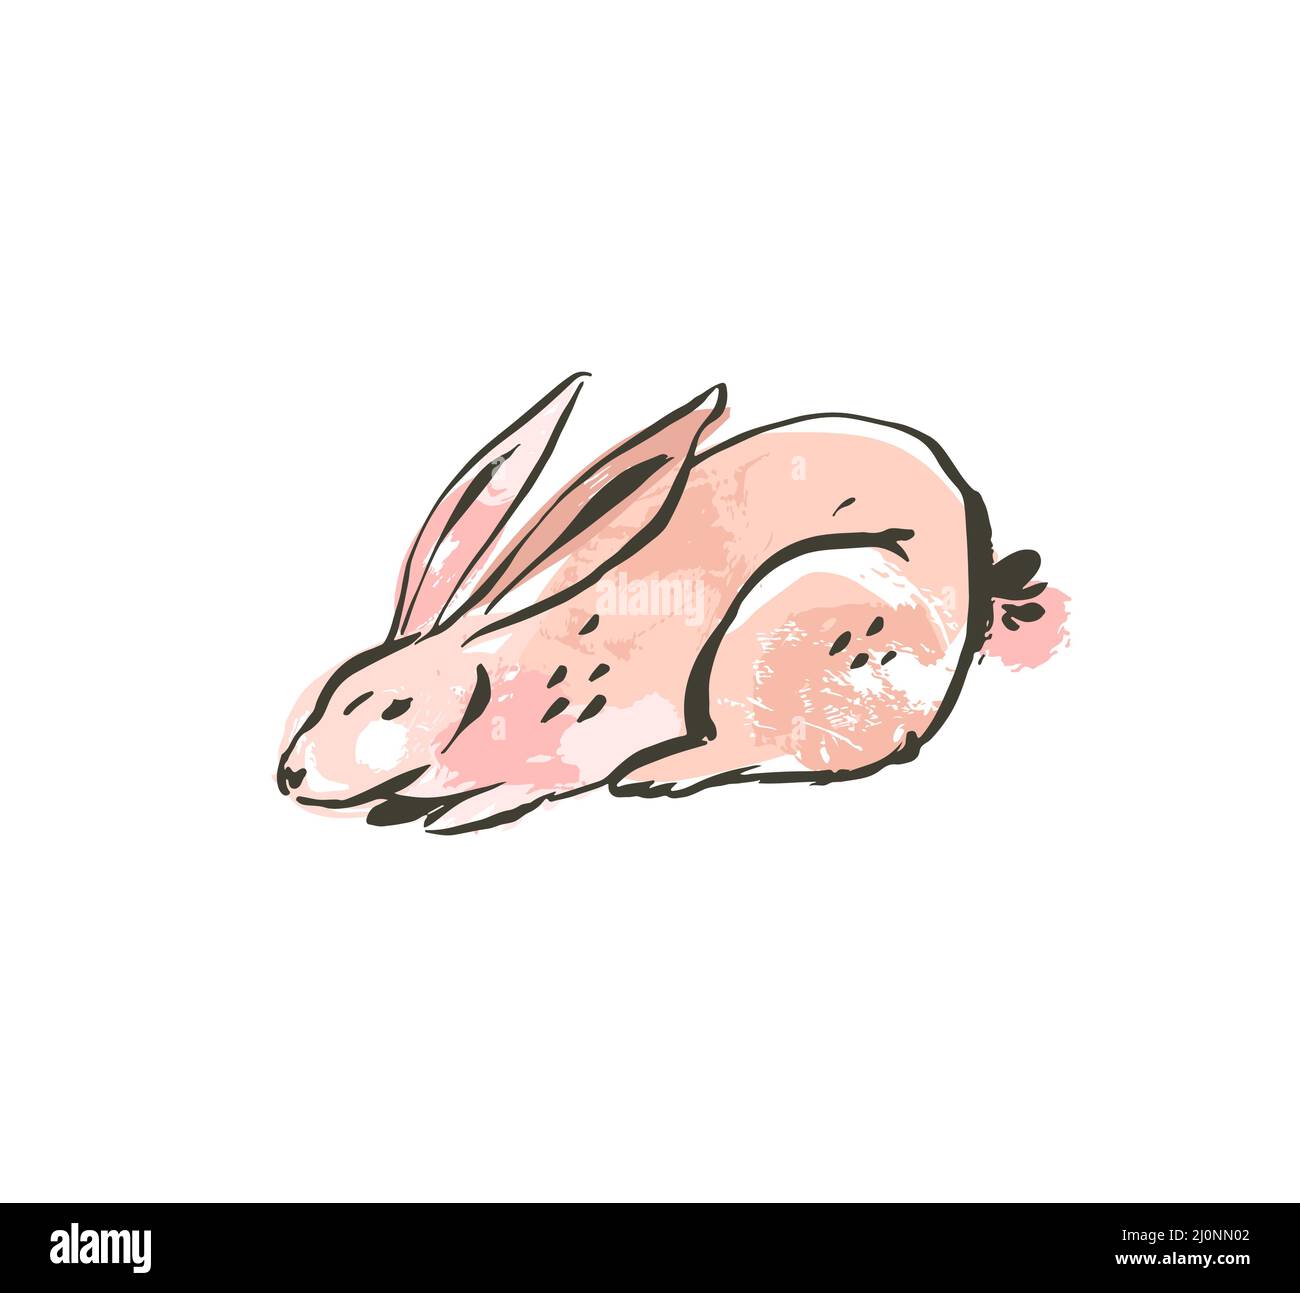 Dessin vectoriel abstrait à la main encre dessin graphique scandinave Happy Easter simple lapin illustrations avec des textures de collage à main levée en pastel Illustration de Vecteur